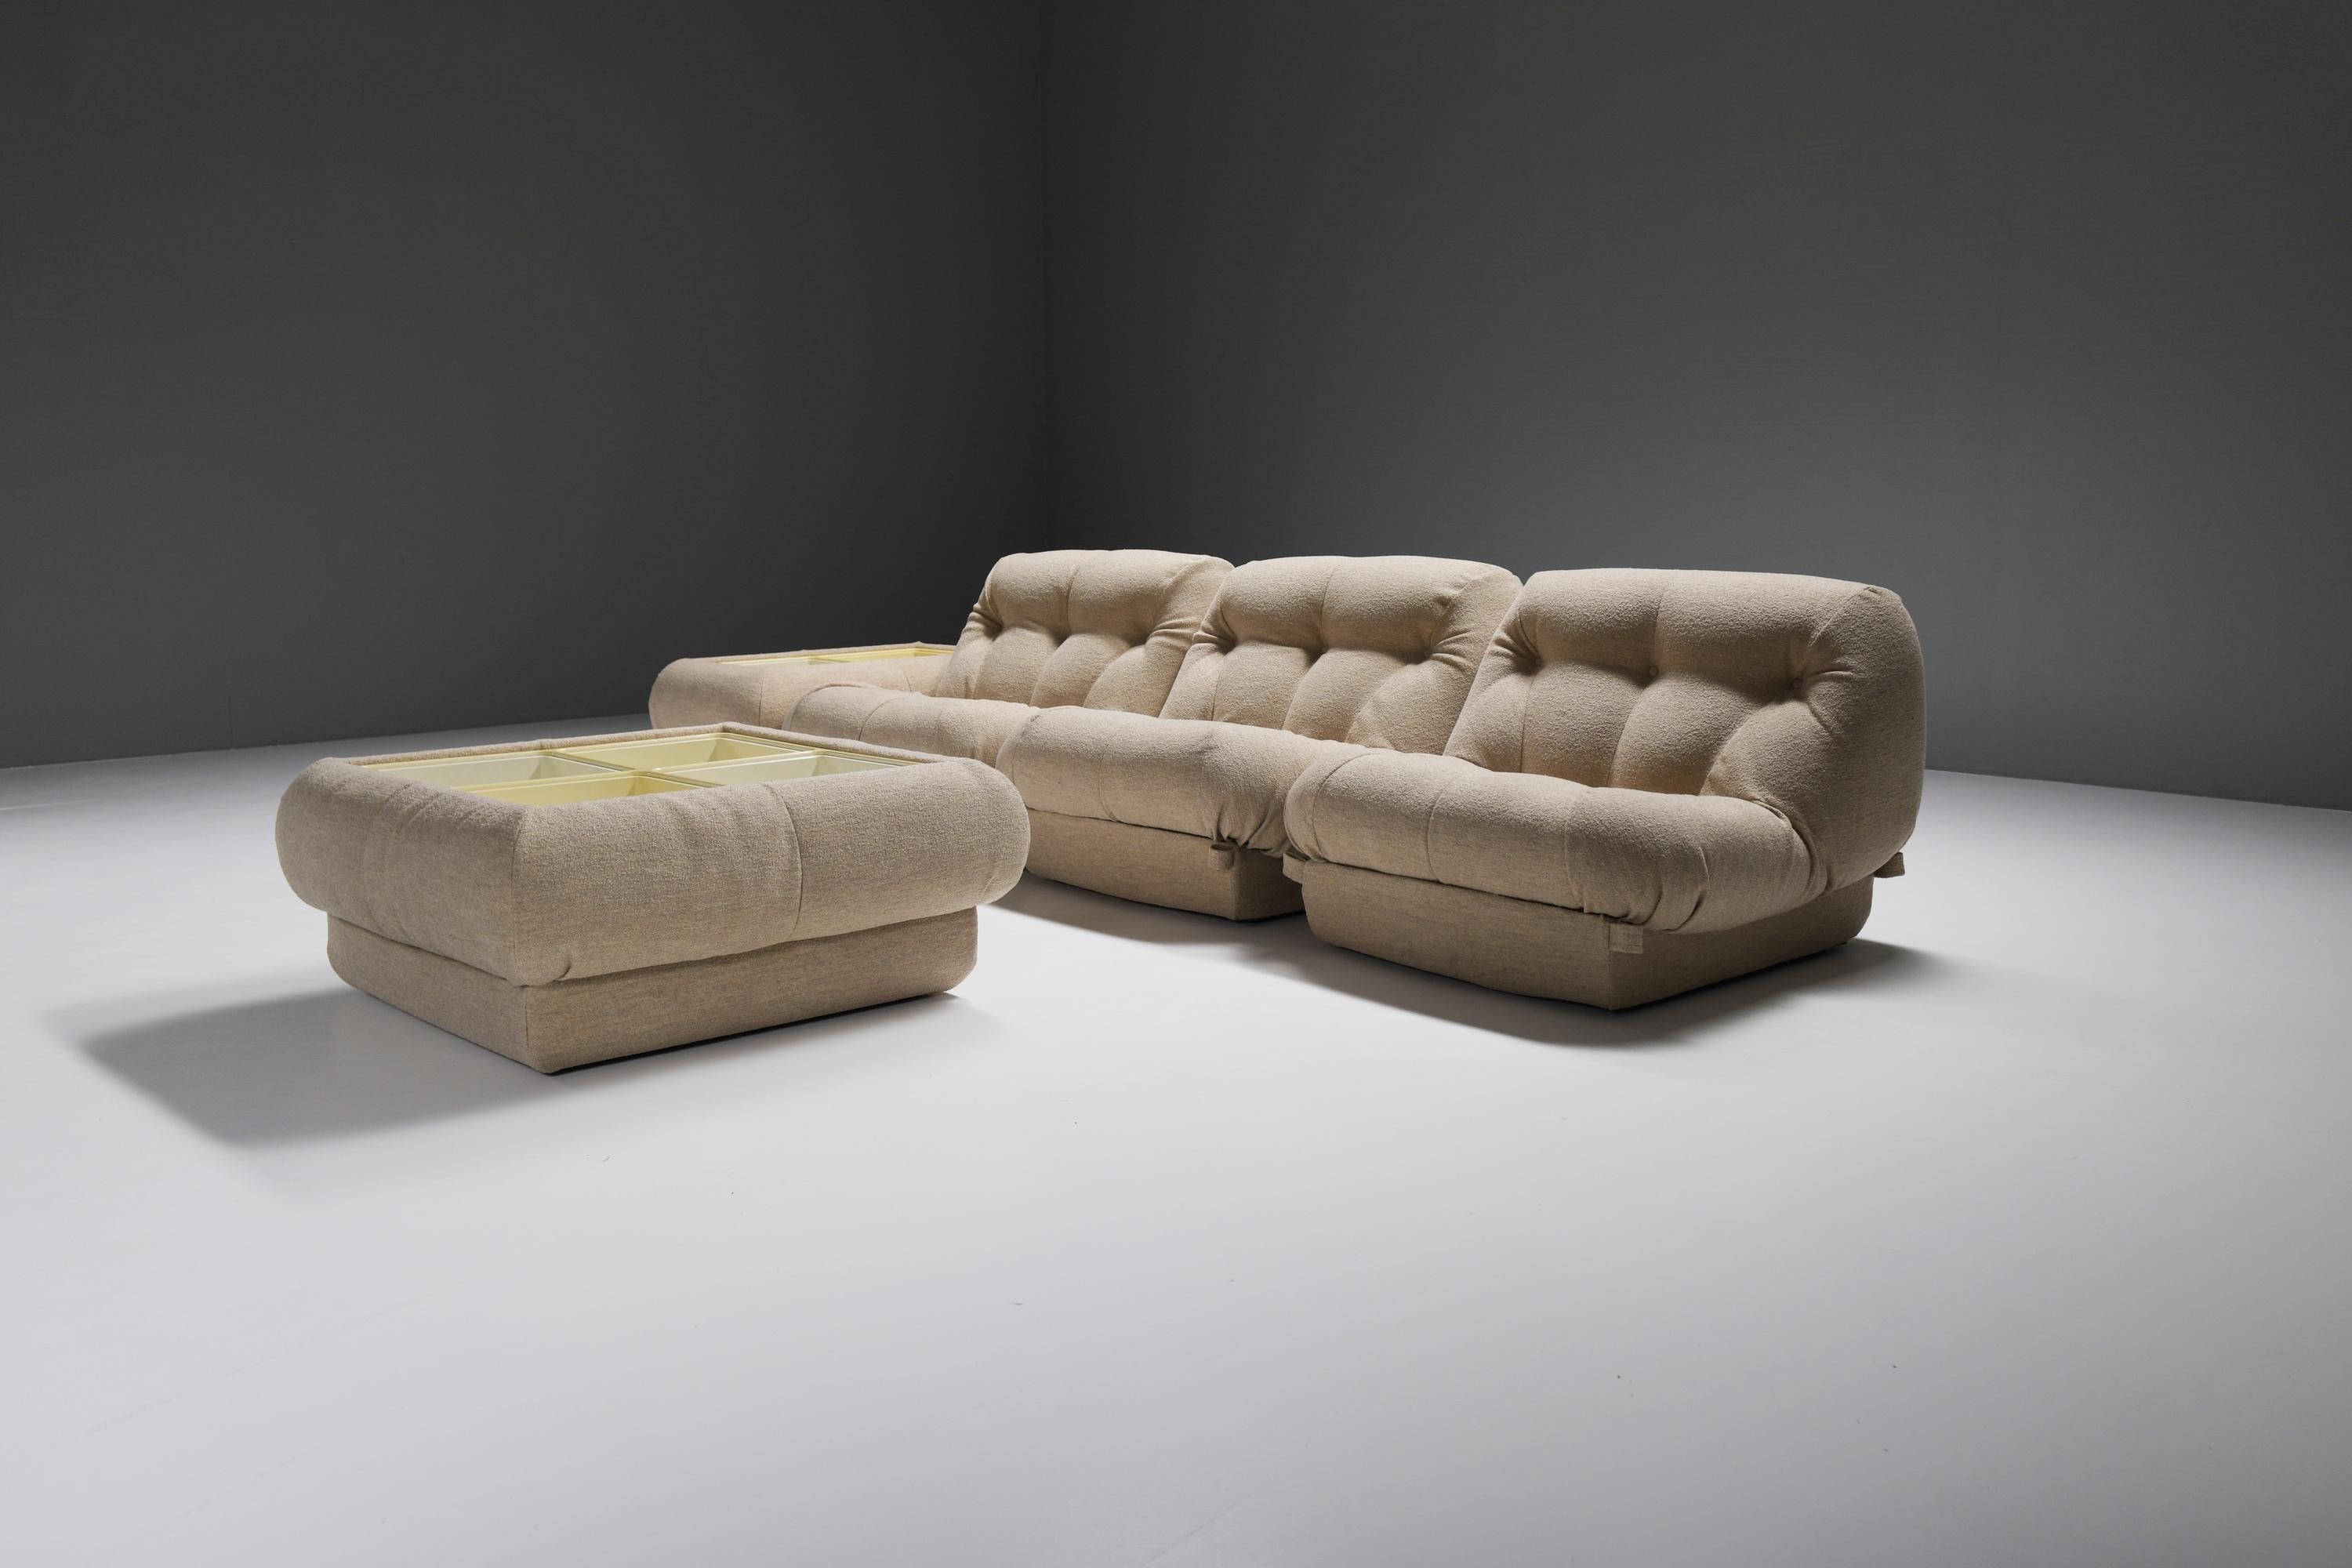 Hübsches Set aus passenden Nuvolone-Stühlen und Couchtischen in einem neuen Bouclé-Stoff.
Dieses modulare Sofa wurde von Rino Maturi für MiMo Padova Italien entworfen - 1970er Jahre

Interne Struktur aus Polyurethanschaum.
Das Design ist von den